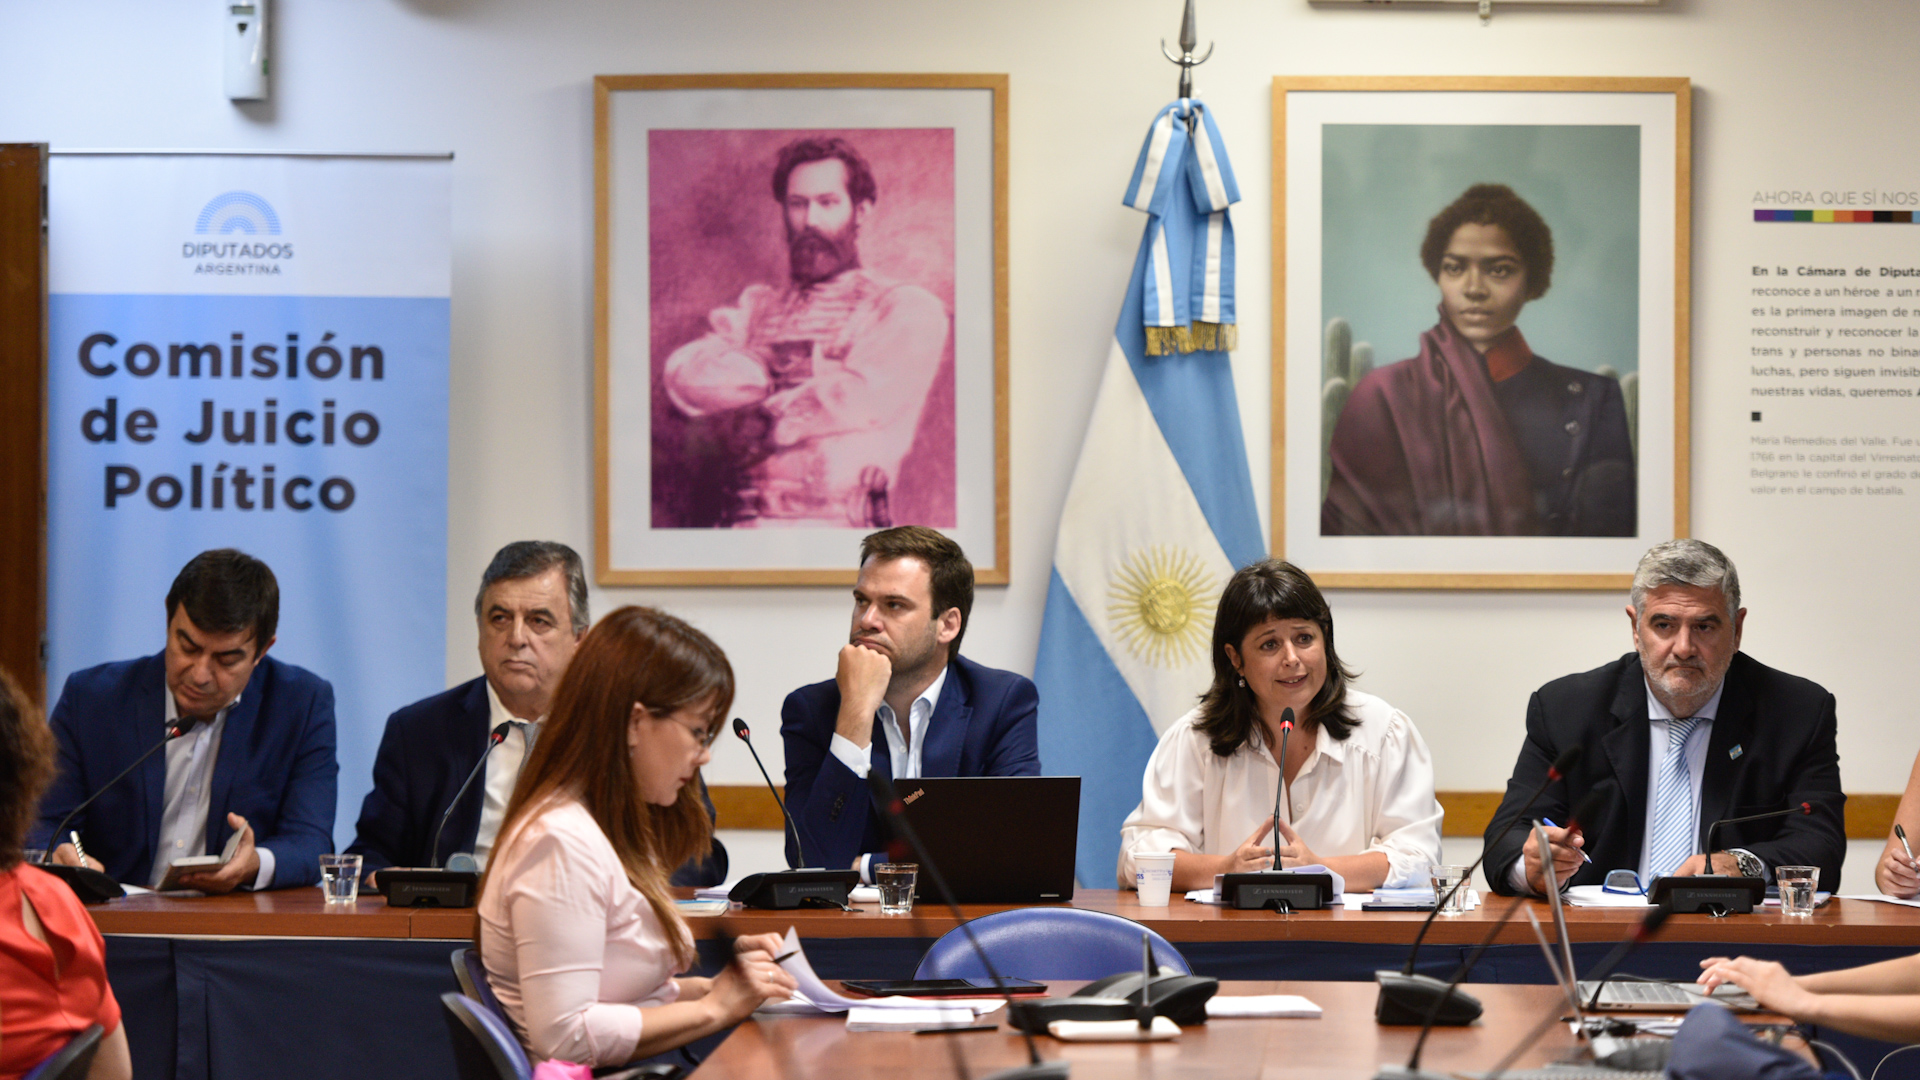 El oficialismo y la oposición protagonizaron una tensa reunión de comisión por el juicio político a la Corte (Fotos: Adrián Escandar)